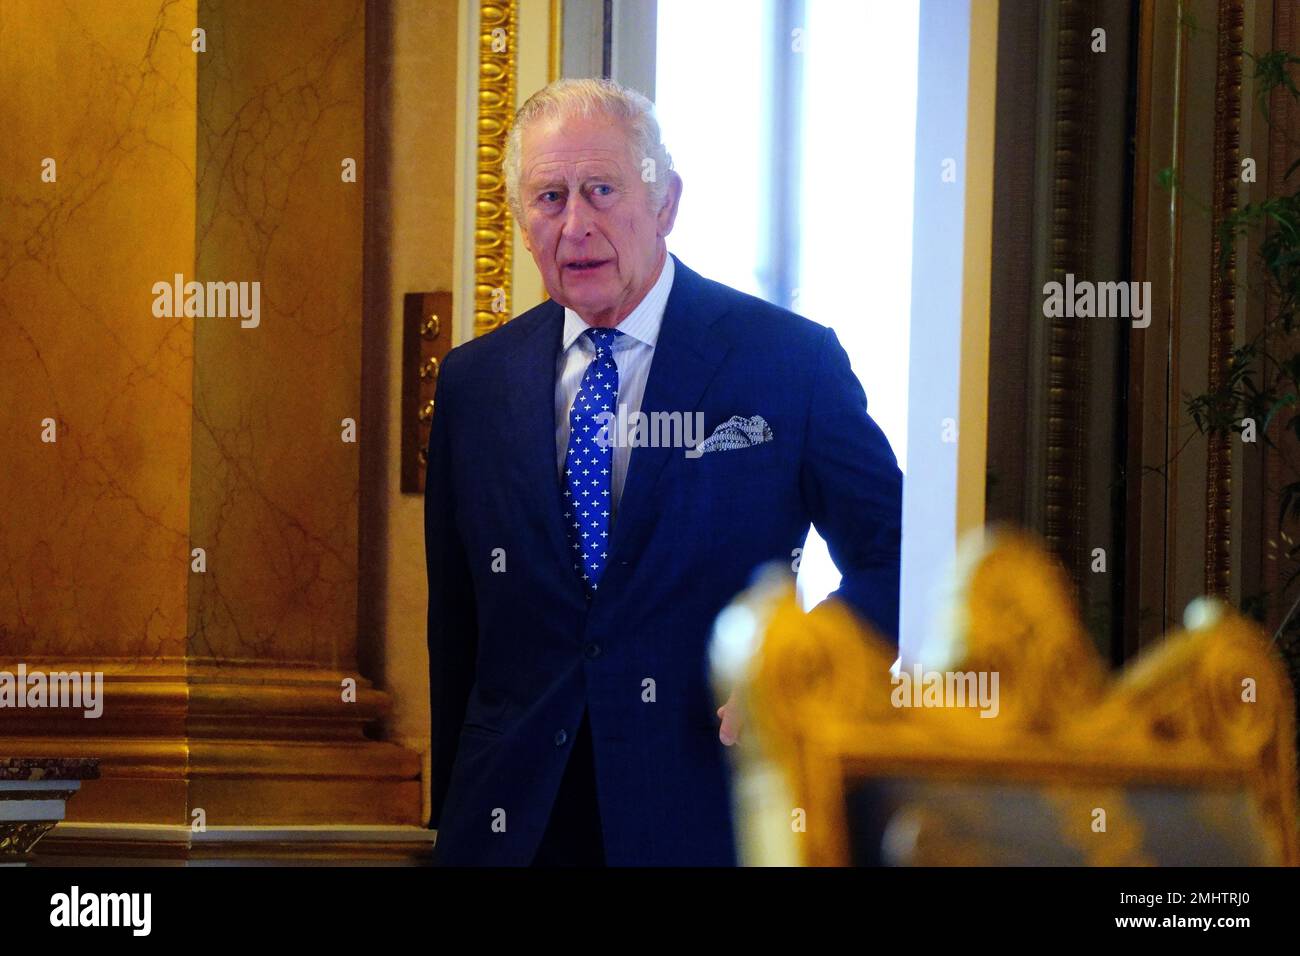 El rey Carlos III antes de reunirse con los sobrevivientes del genocidio en el Palacio de Buckingham, Londres, para conmemorar el Día de los Caídos del Holocausto. Fecha de la fotografía: Viernes 27 de enero de 2023. Foto de stock